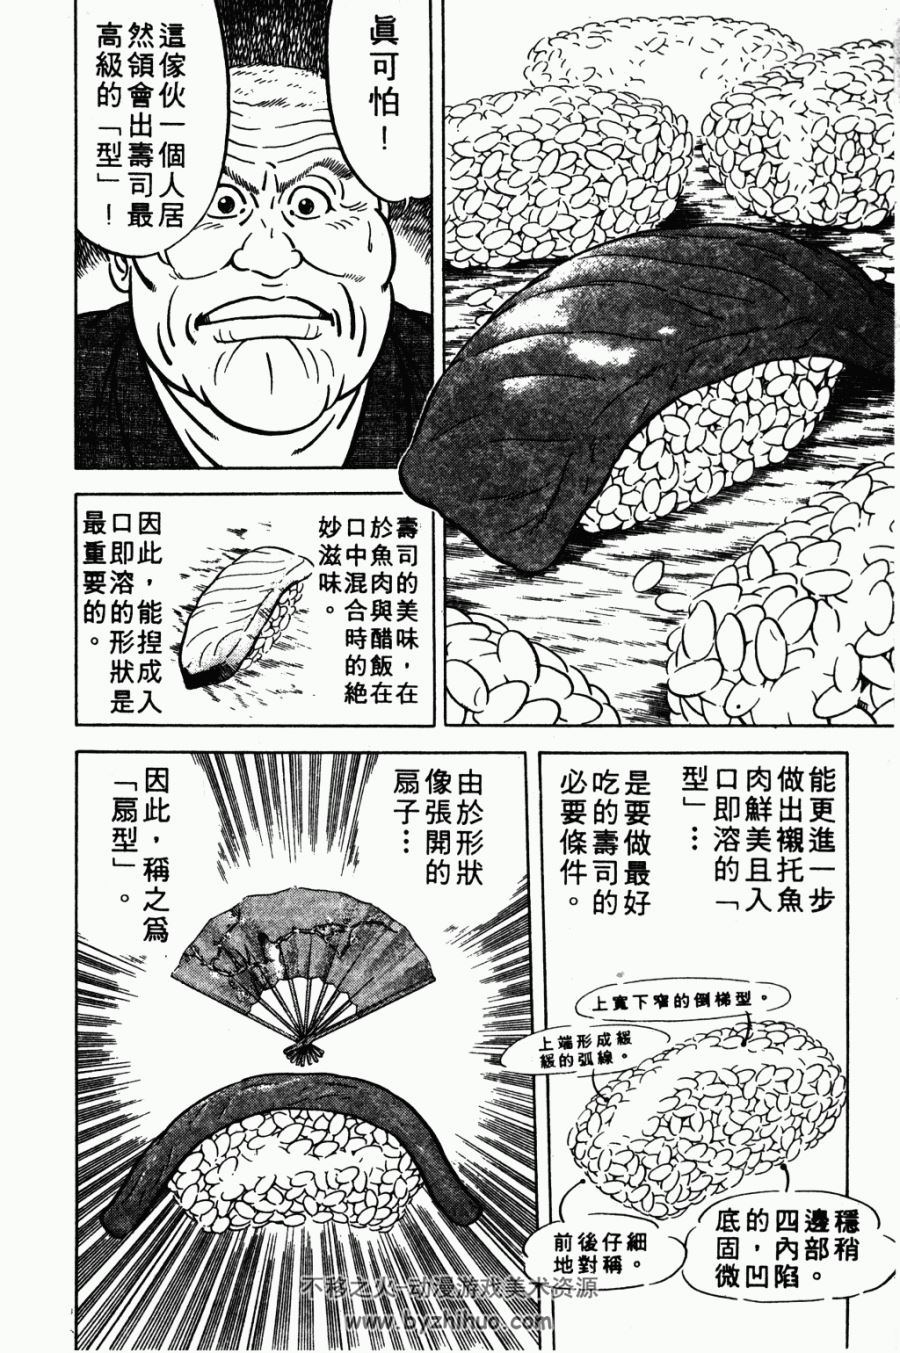 【经典美食漫画14】将太的寿司 寺沢大介 台湾東立中文版 27卷完